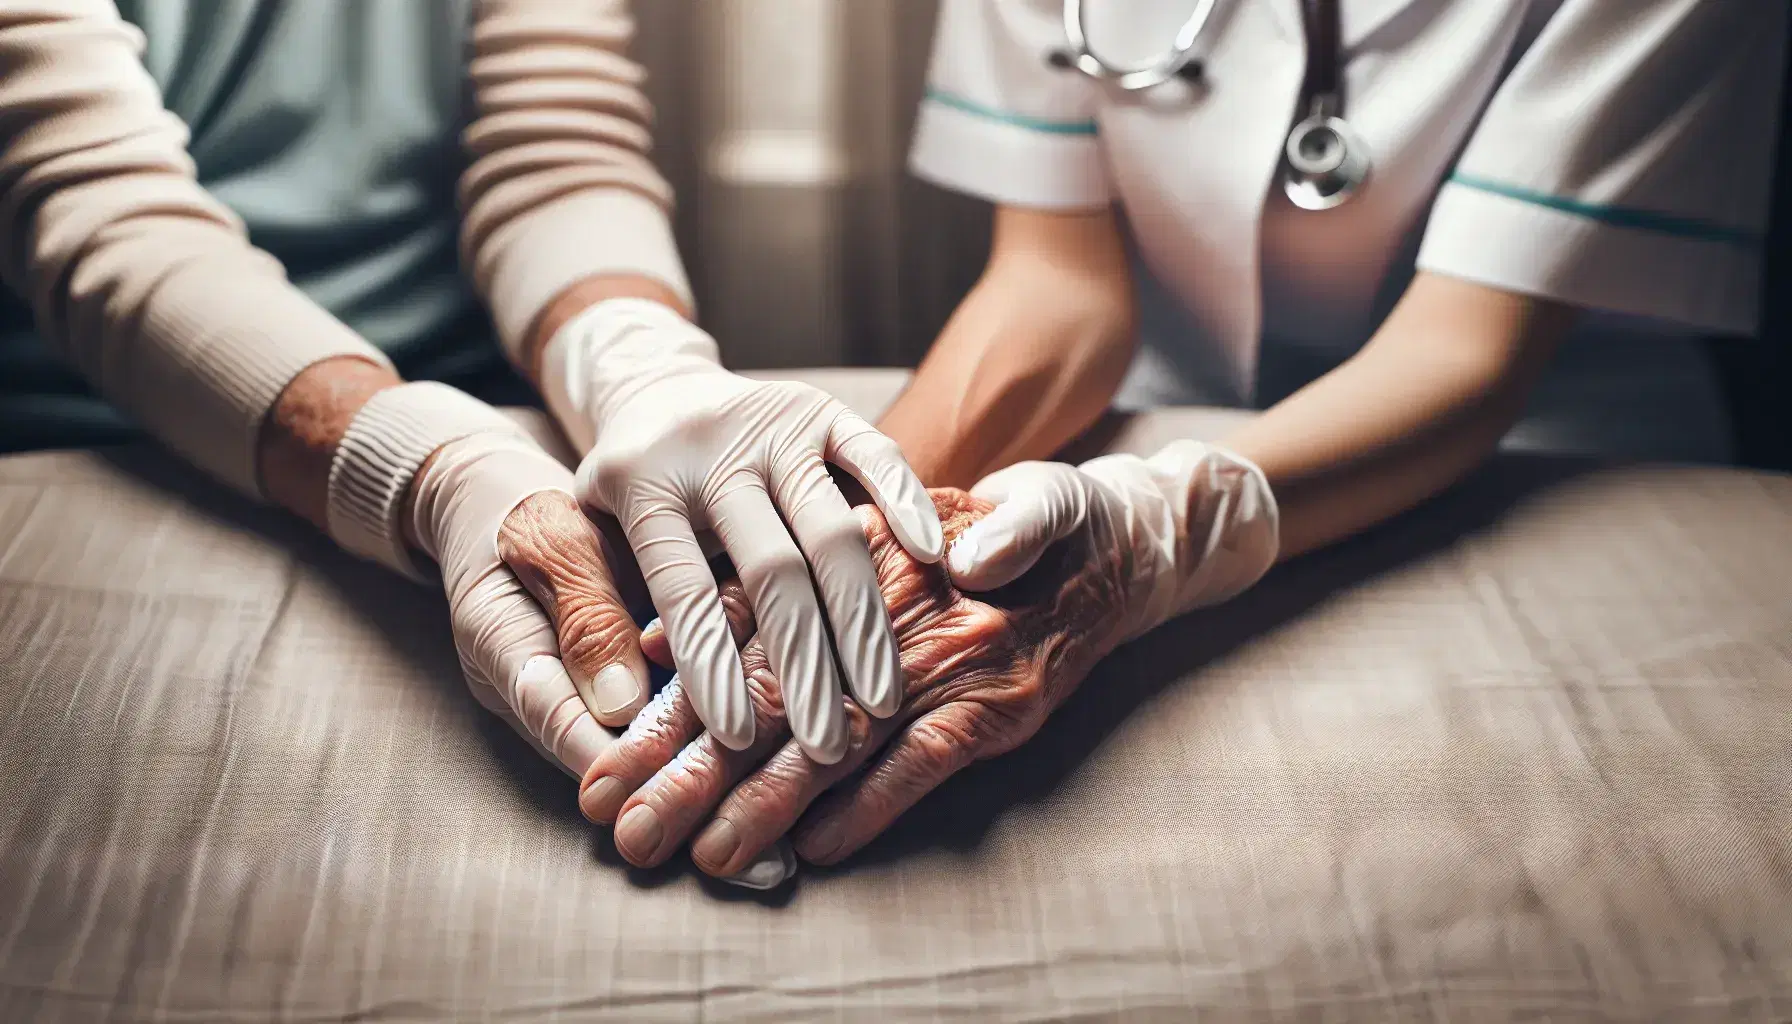 Manos de enfermera geriátrica con guantes de látex sujetando con cuidado las manos arrugadas y con manchas de la edad de un anciano, sobre fondo neutro y suave.